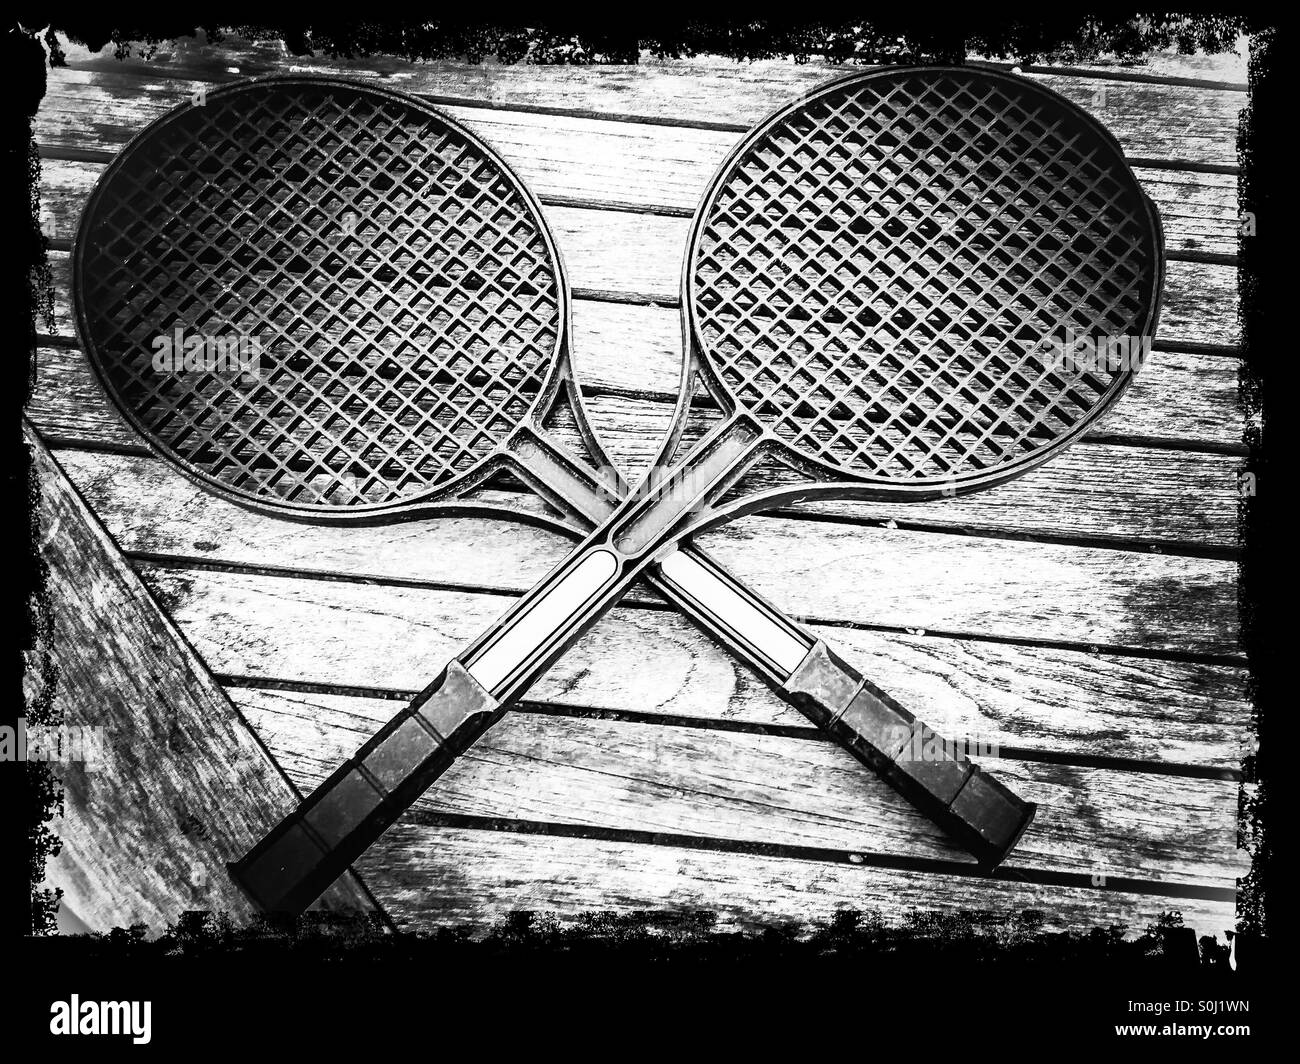 Deux raquettes de tennis noir et blanc Banque D'Images